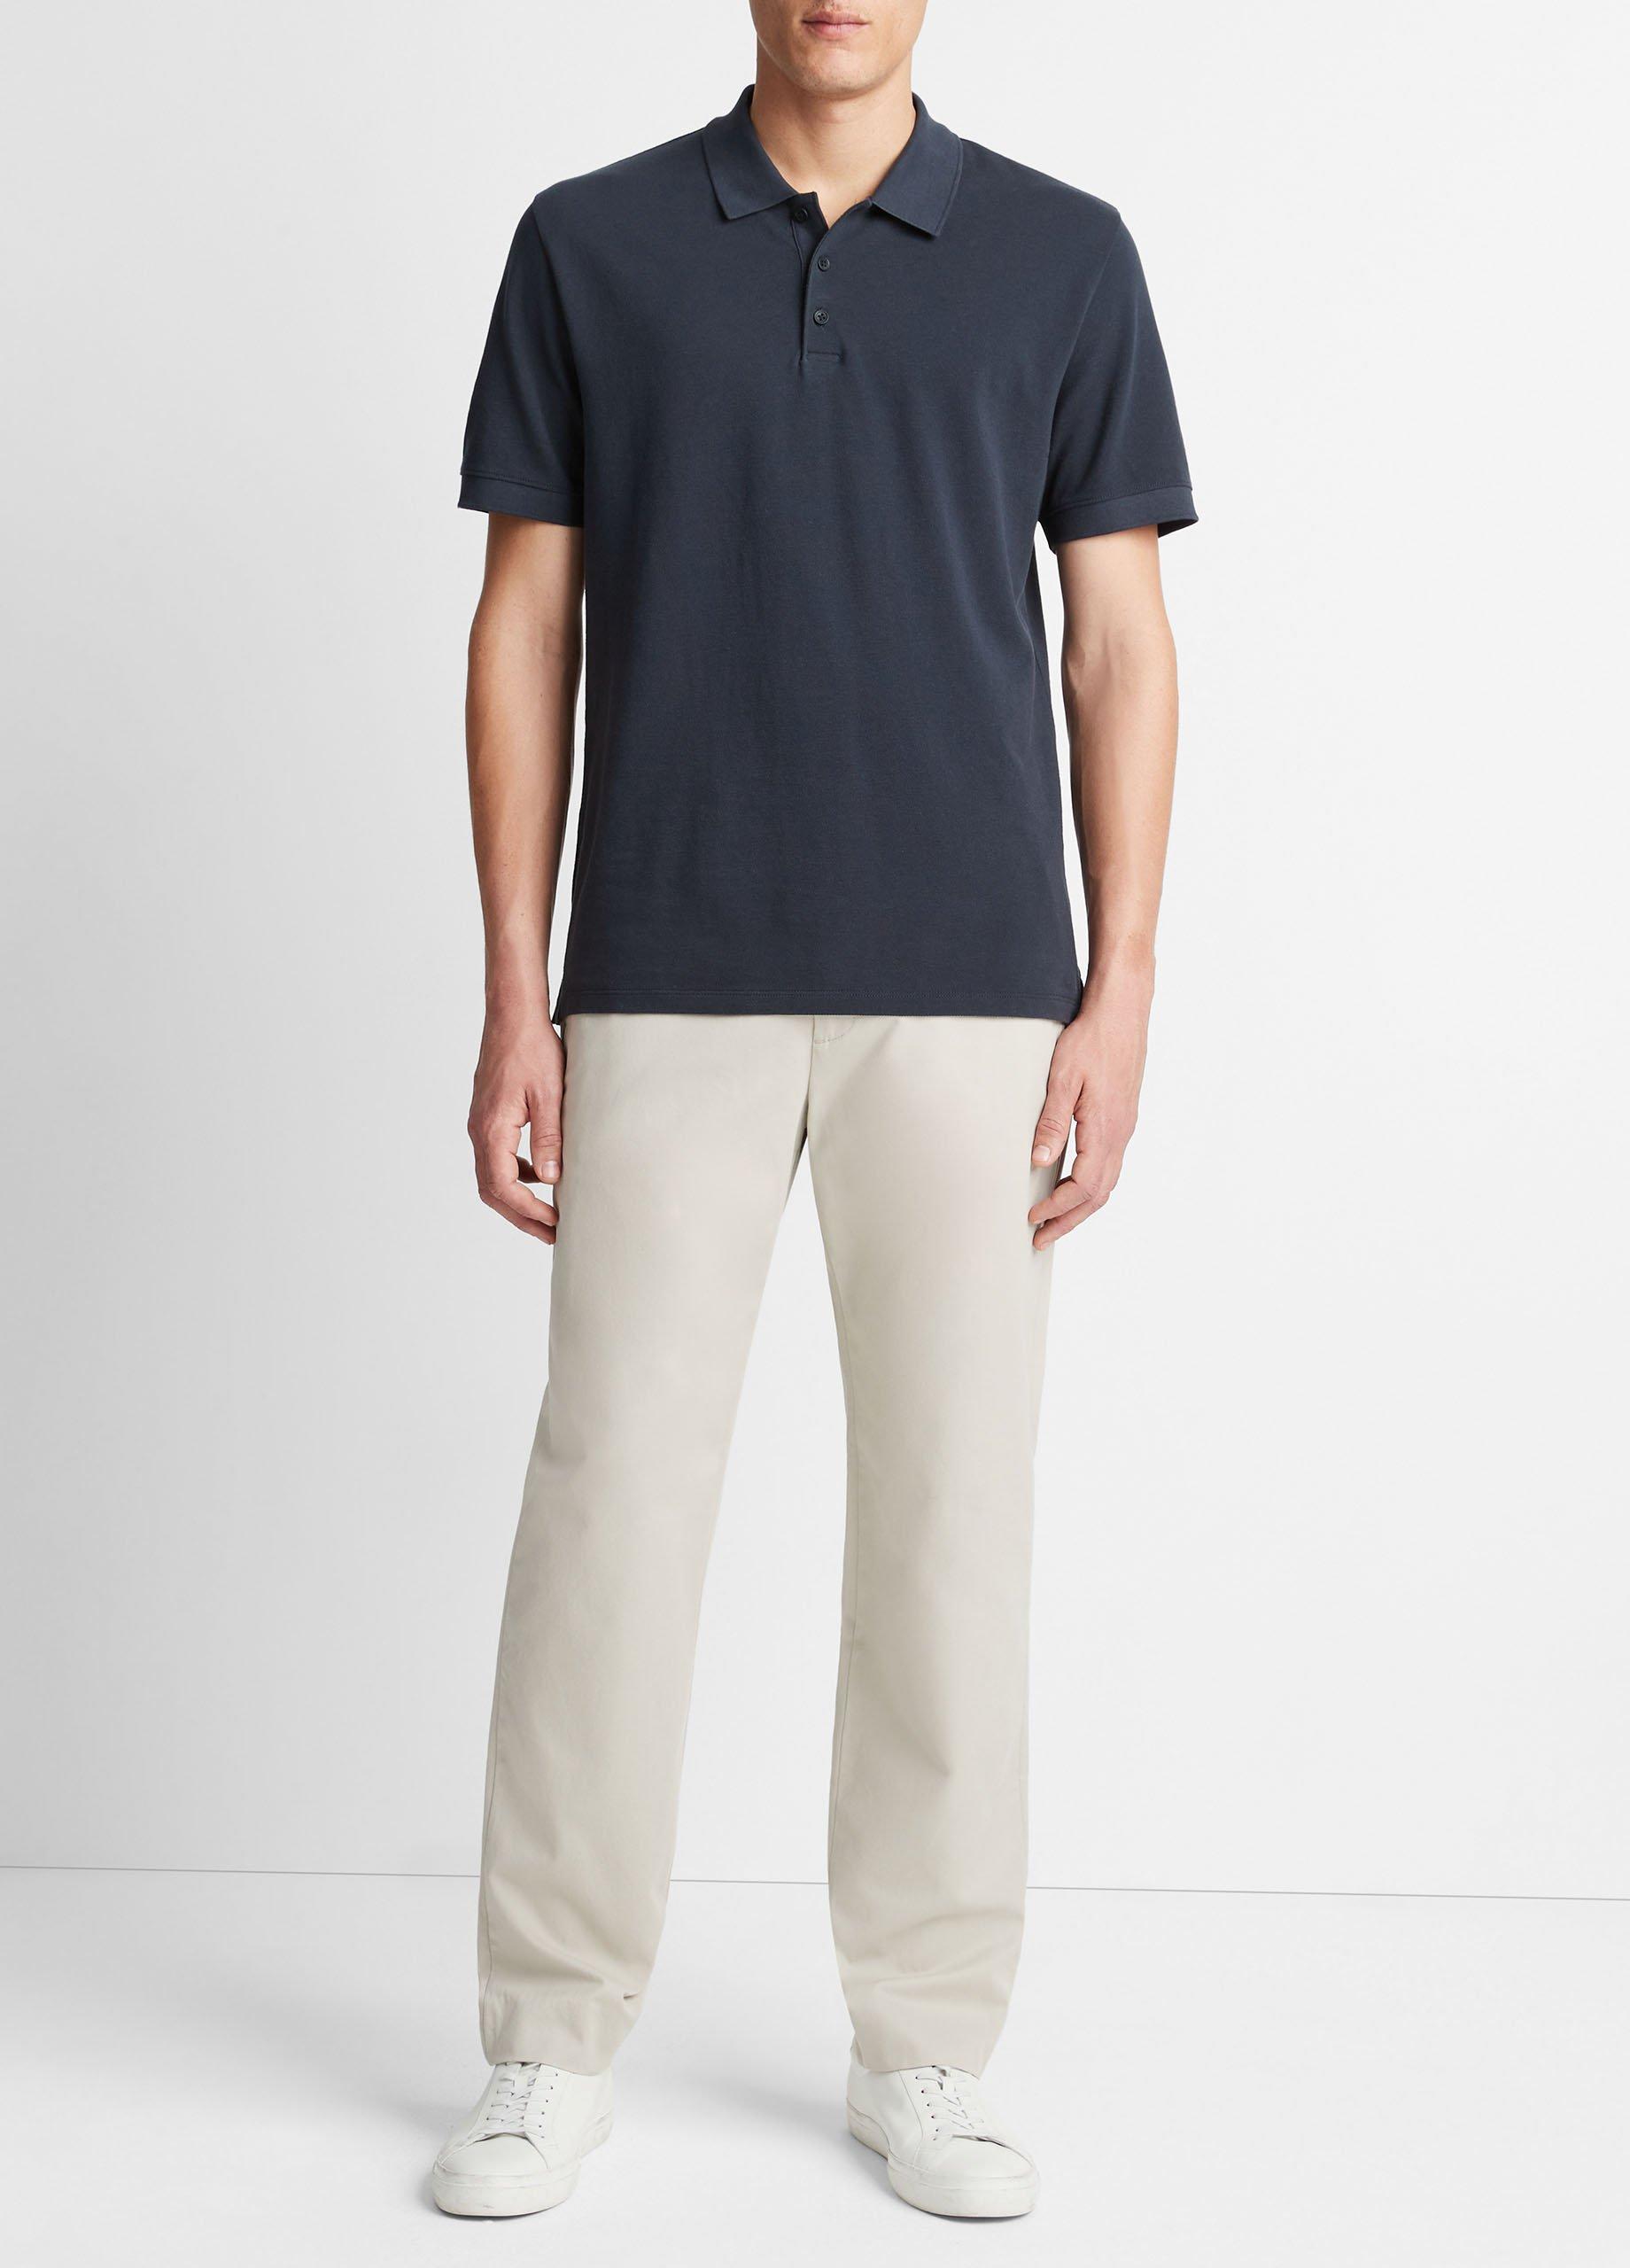 Cotton Piqué Polo Shirt, Coastal Blue, Size M Vince